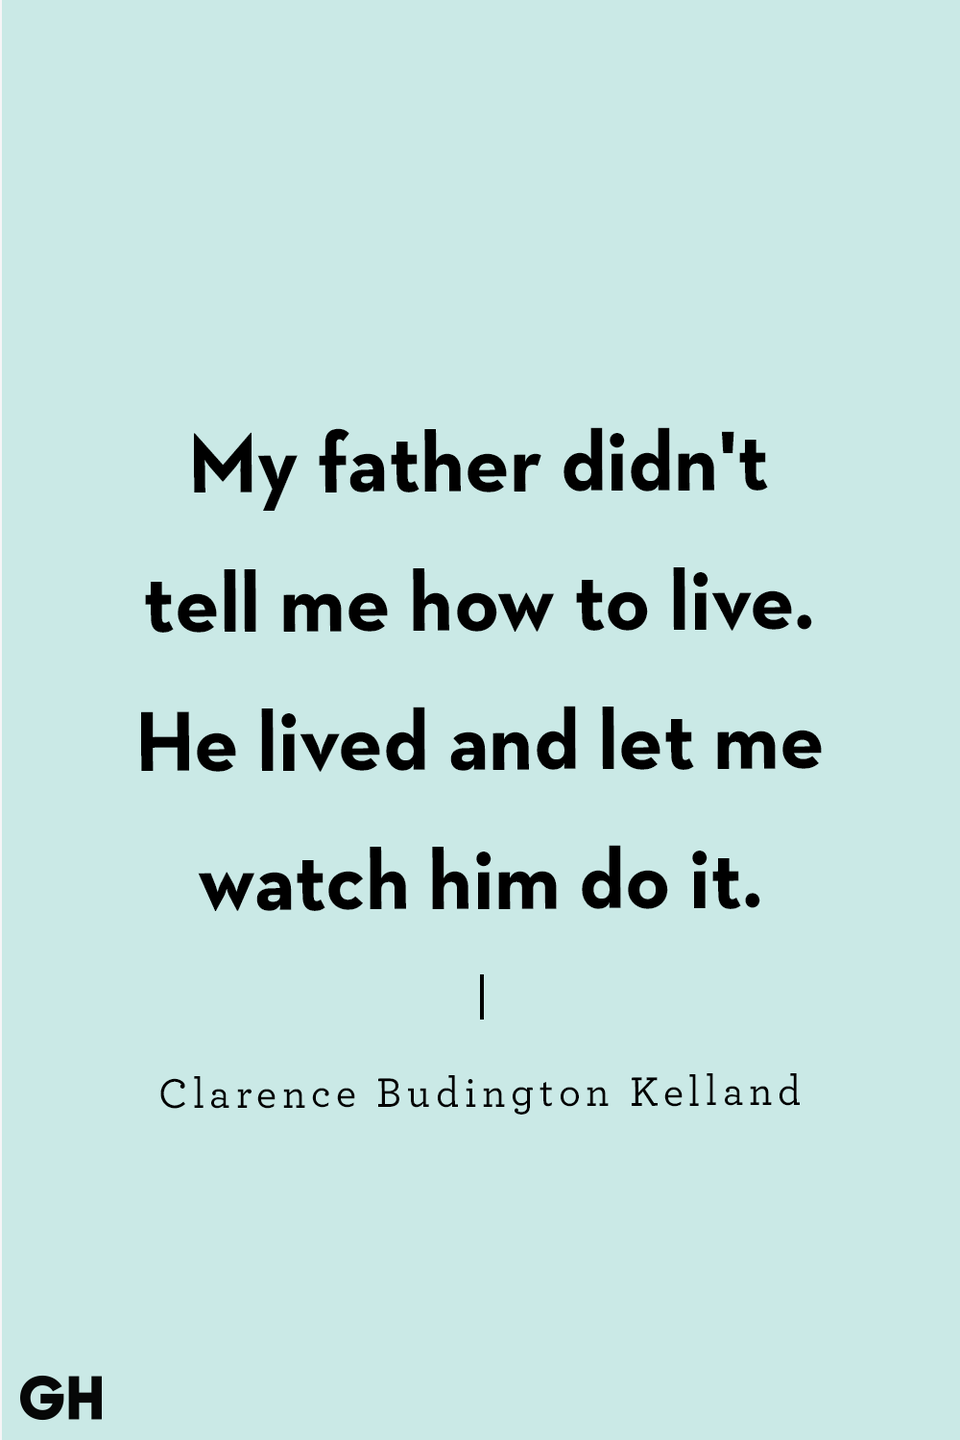 Clarence Budington Kelland